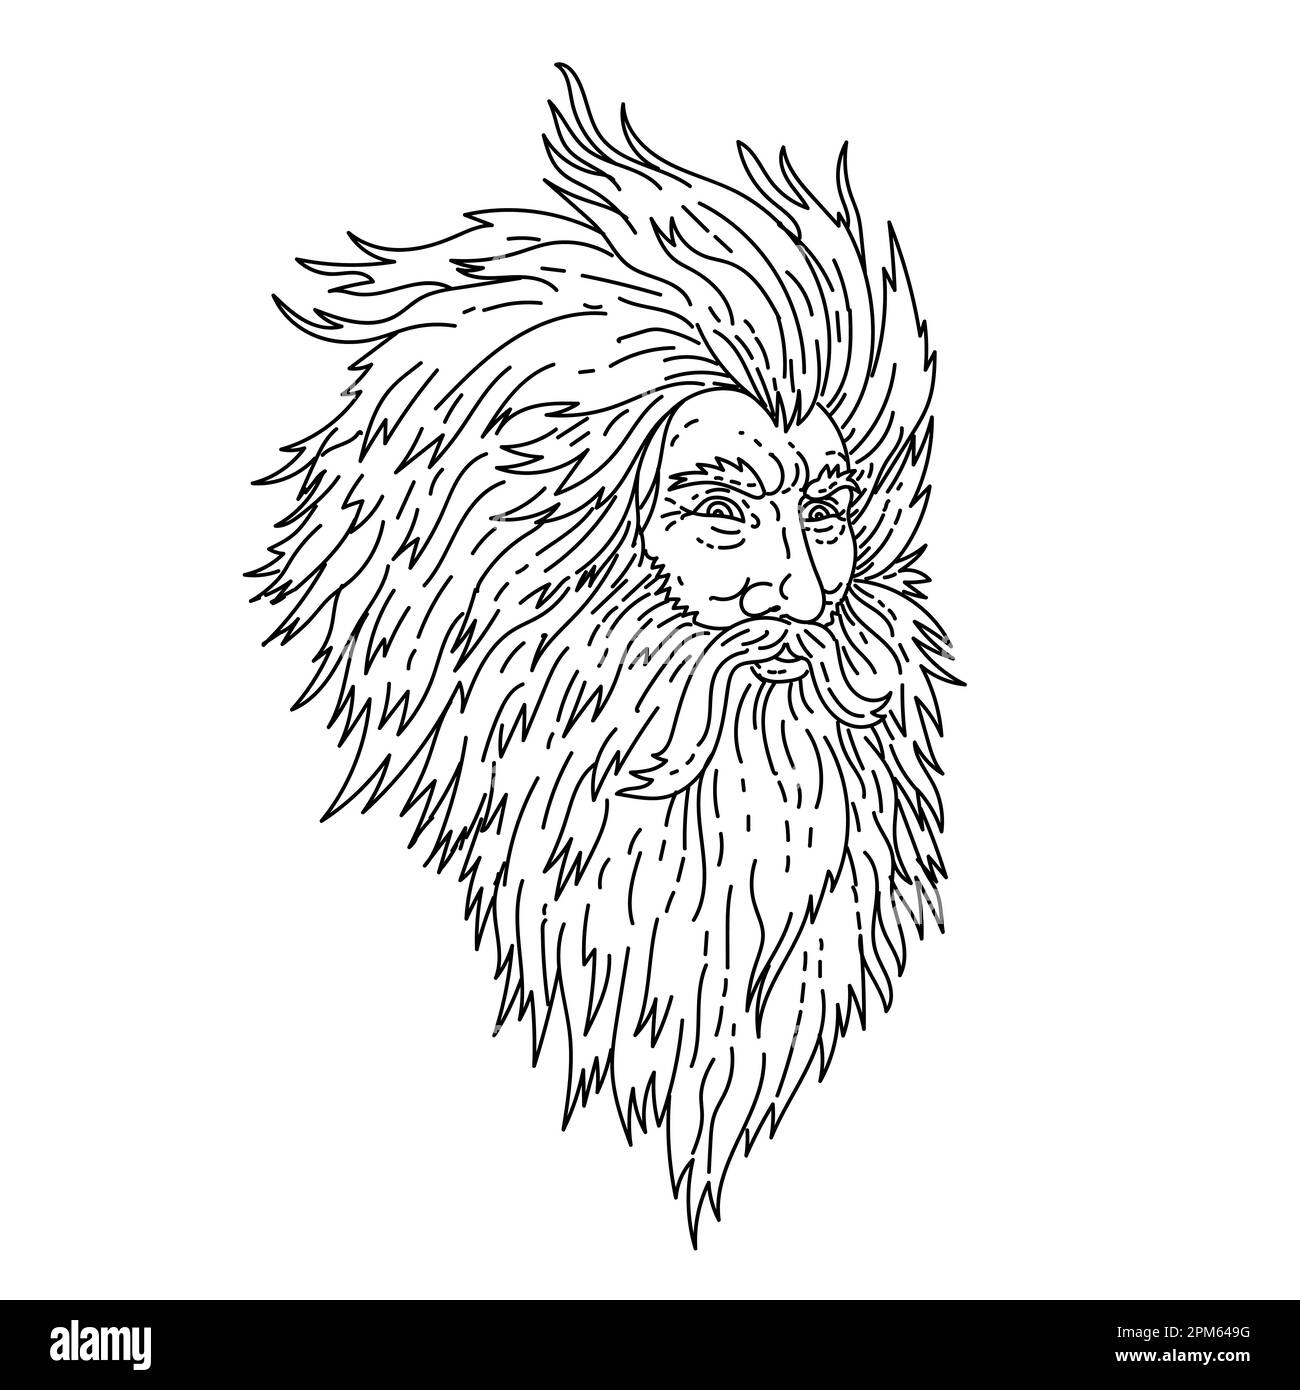 Illustrazione in linea singola della testa del dio greco arrabbiato Zeus o del Dio romano Giove con la barba fatta in stile d'arte di disegno in linea monolina. Foto Stock